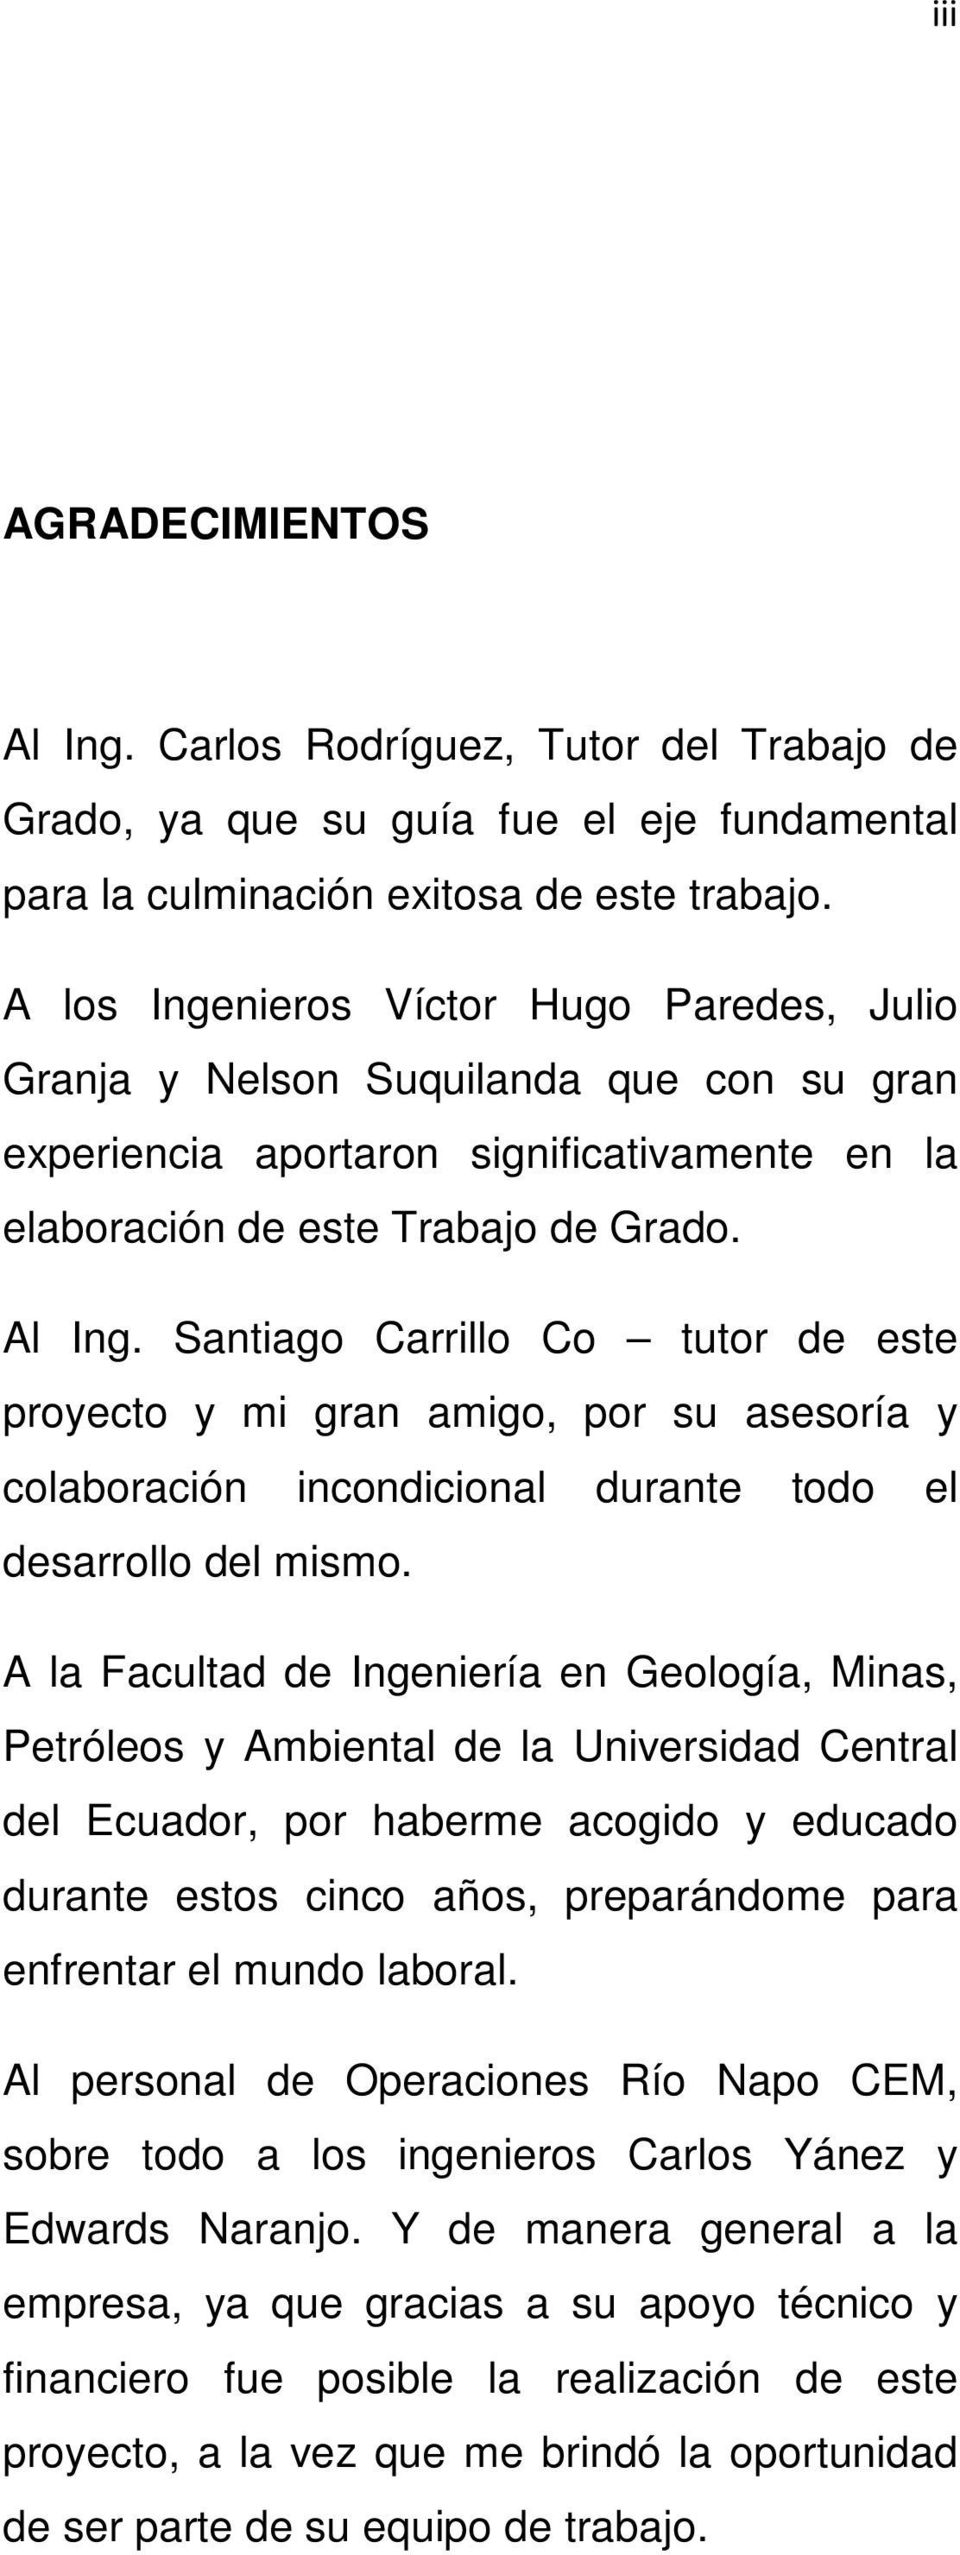 Universidad Central Del Ecuador Facultad De Ingenieria En Geologia